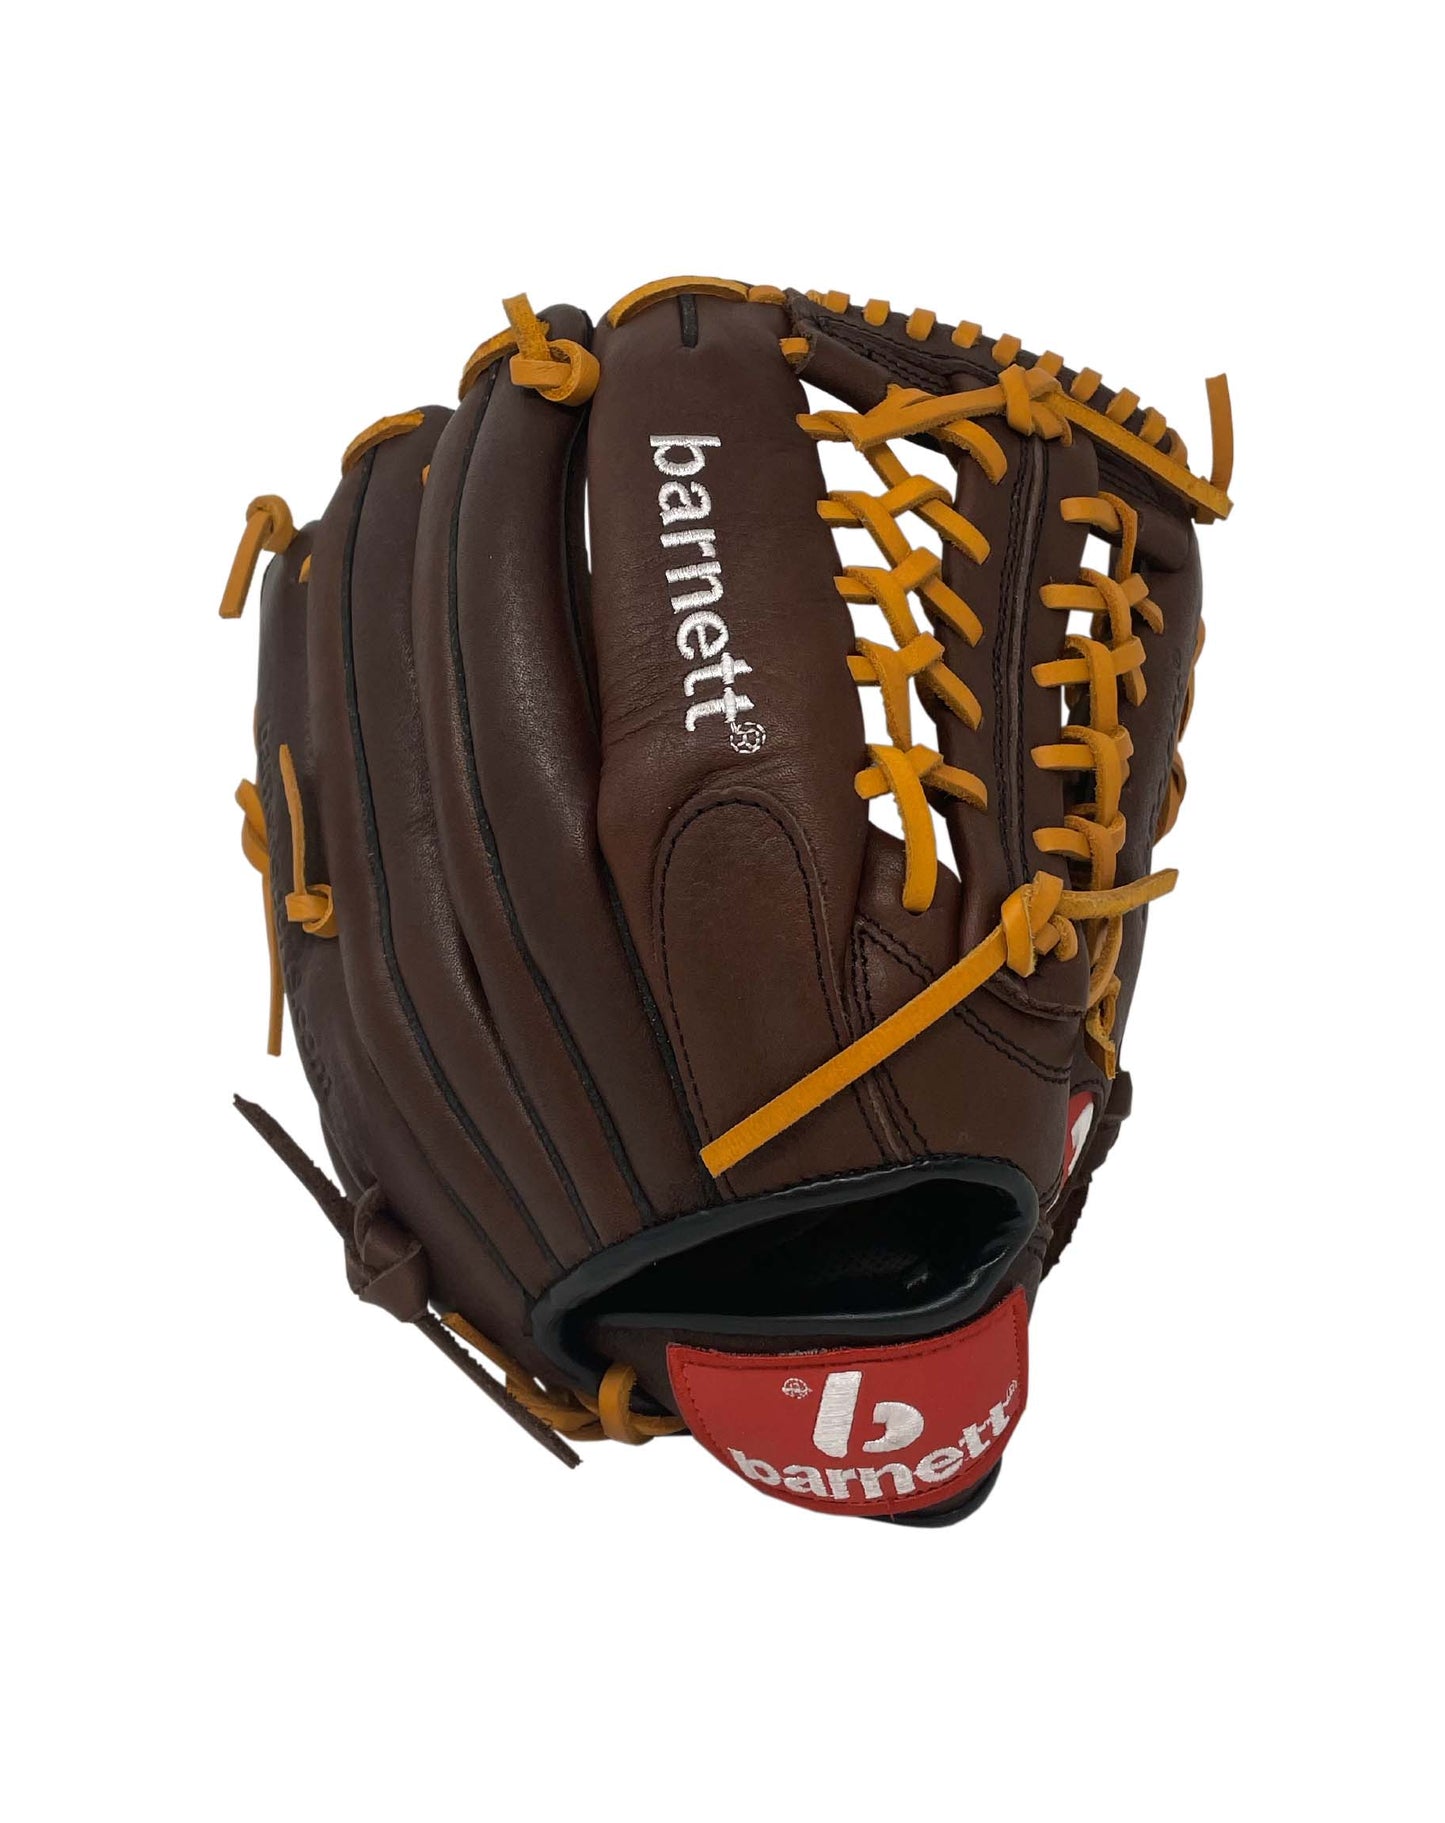 Gant de baseball de compétition GL-125, cuir véritable, champ extérieur 12,5, marron